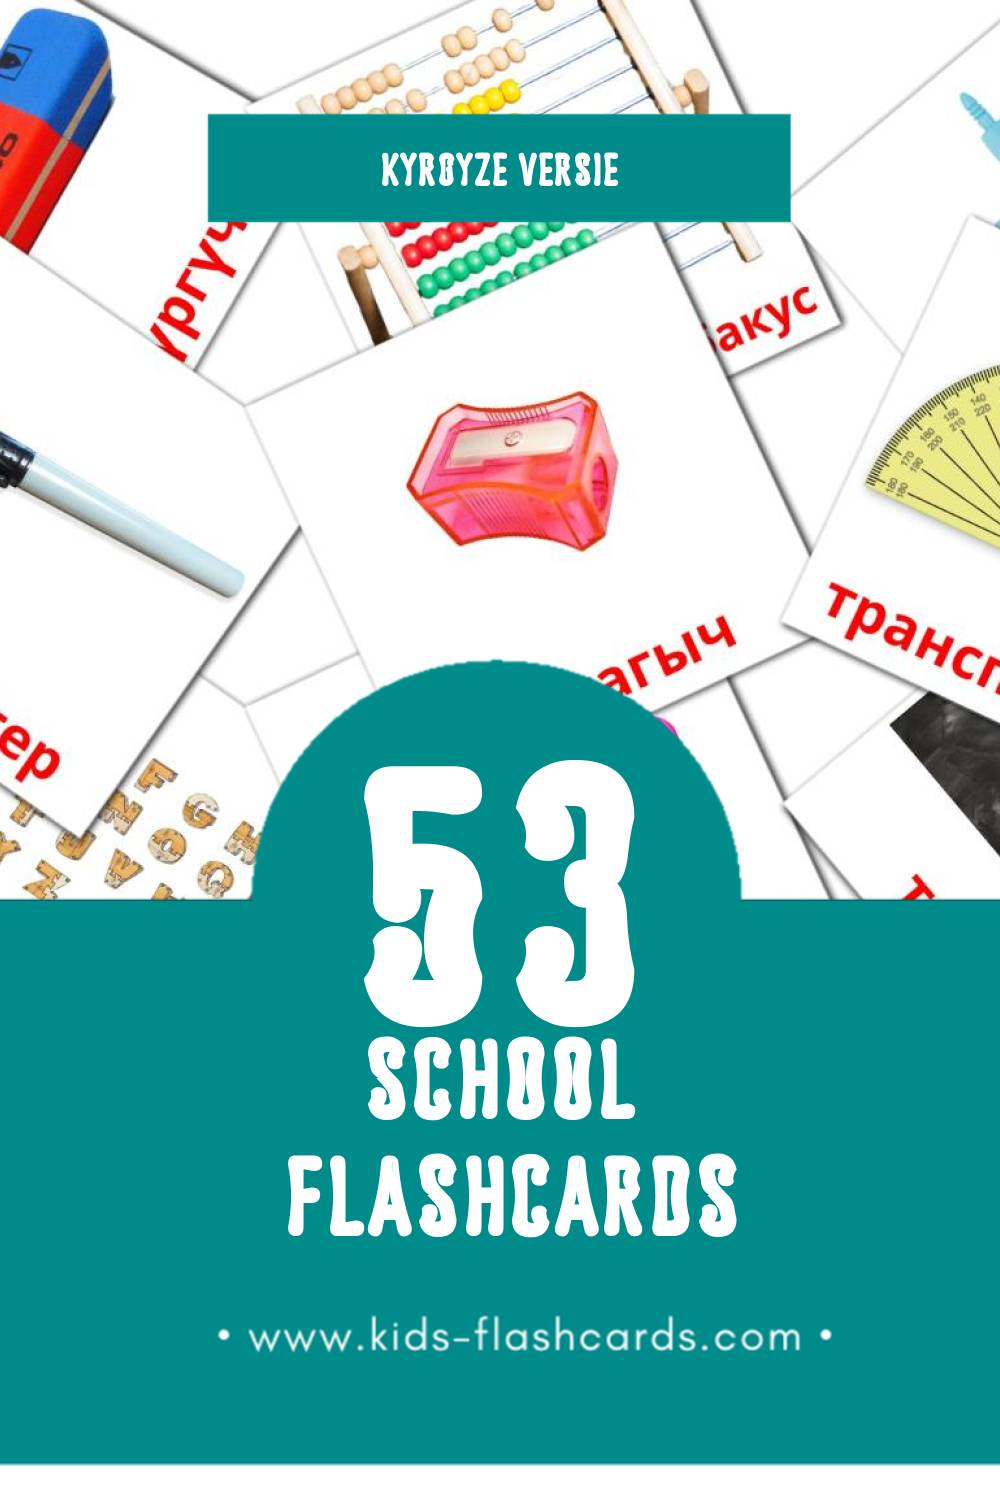 Visuele Мектеп Flashcards voor Kleuters (53 kaarten in het Kyrgyz)